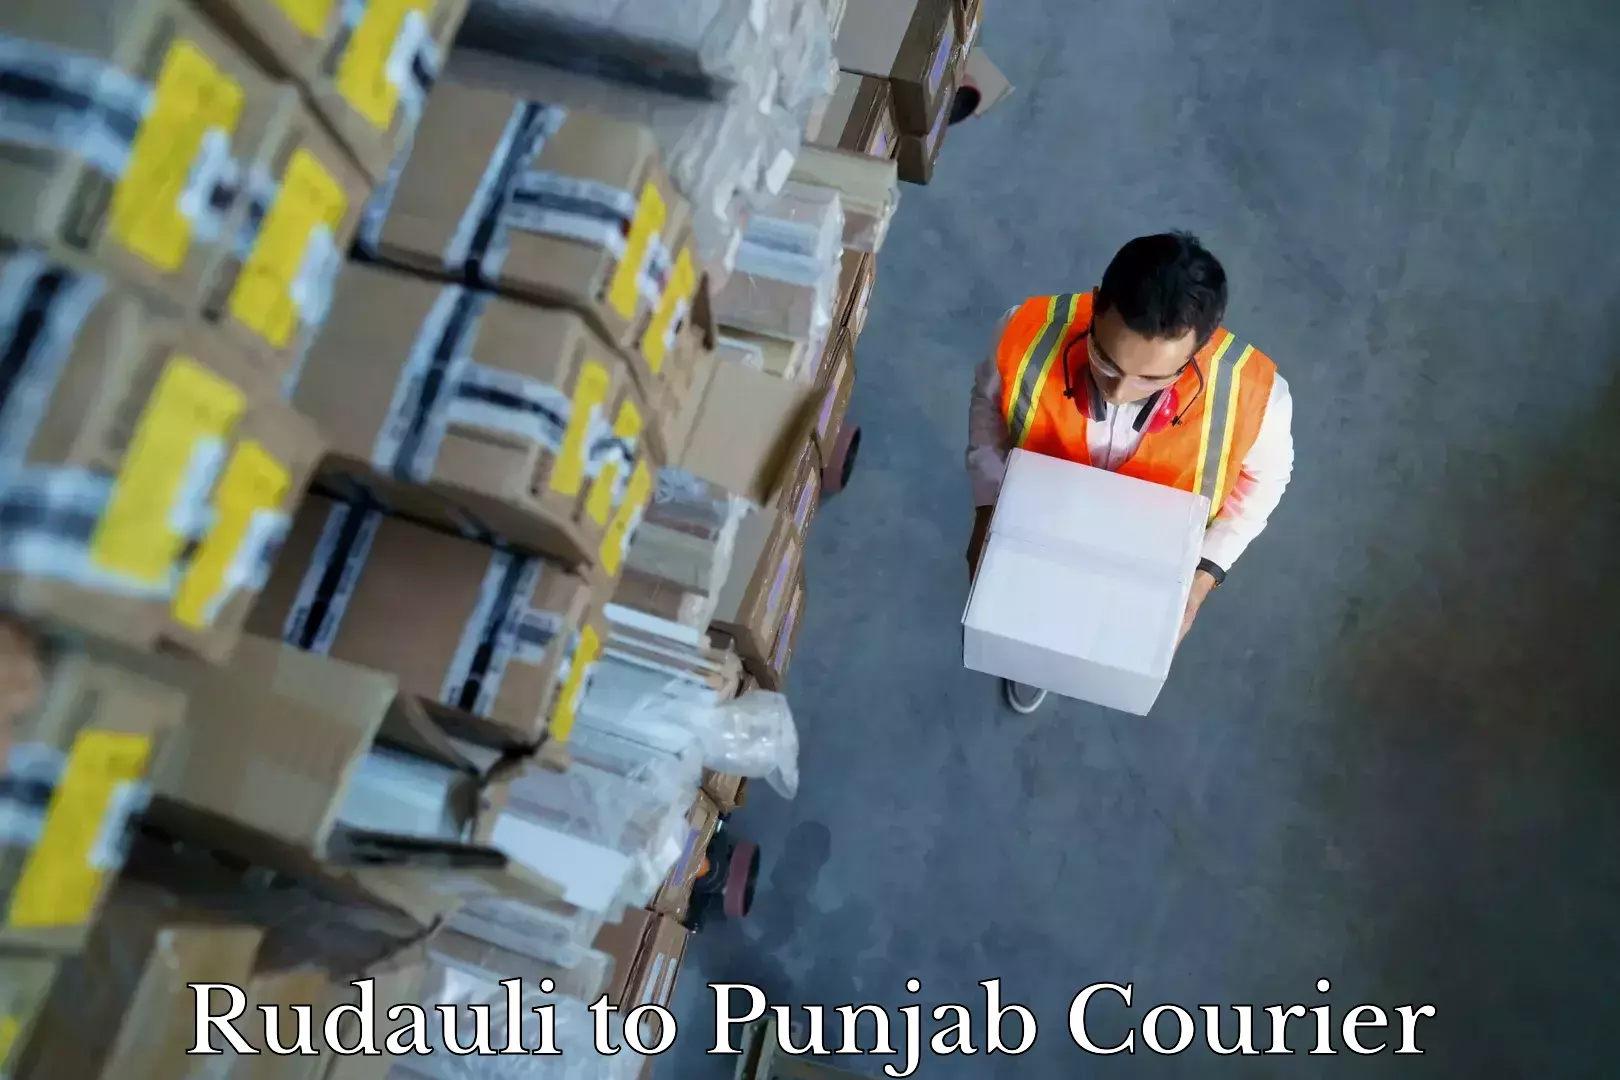 Furniture transport services Rudauli to Punjab